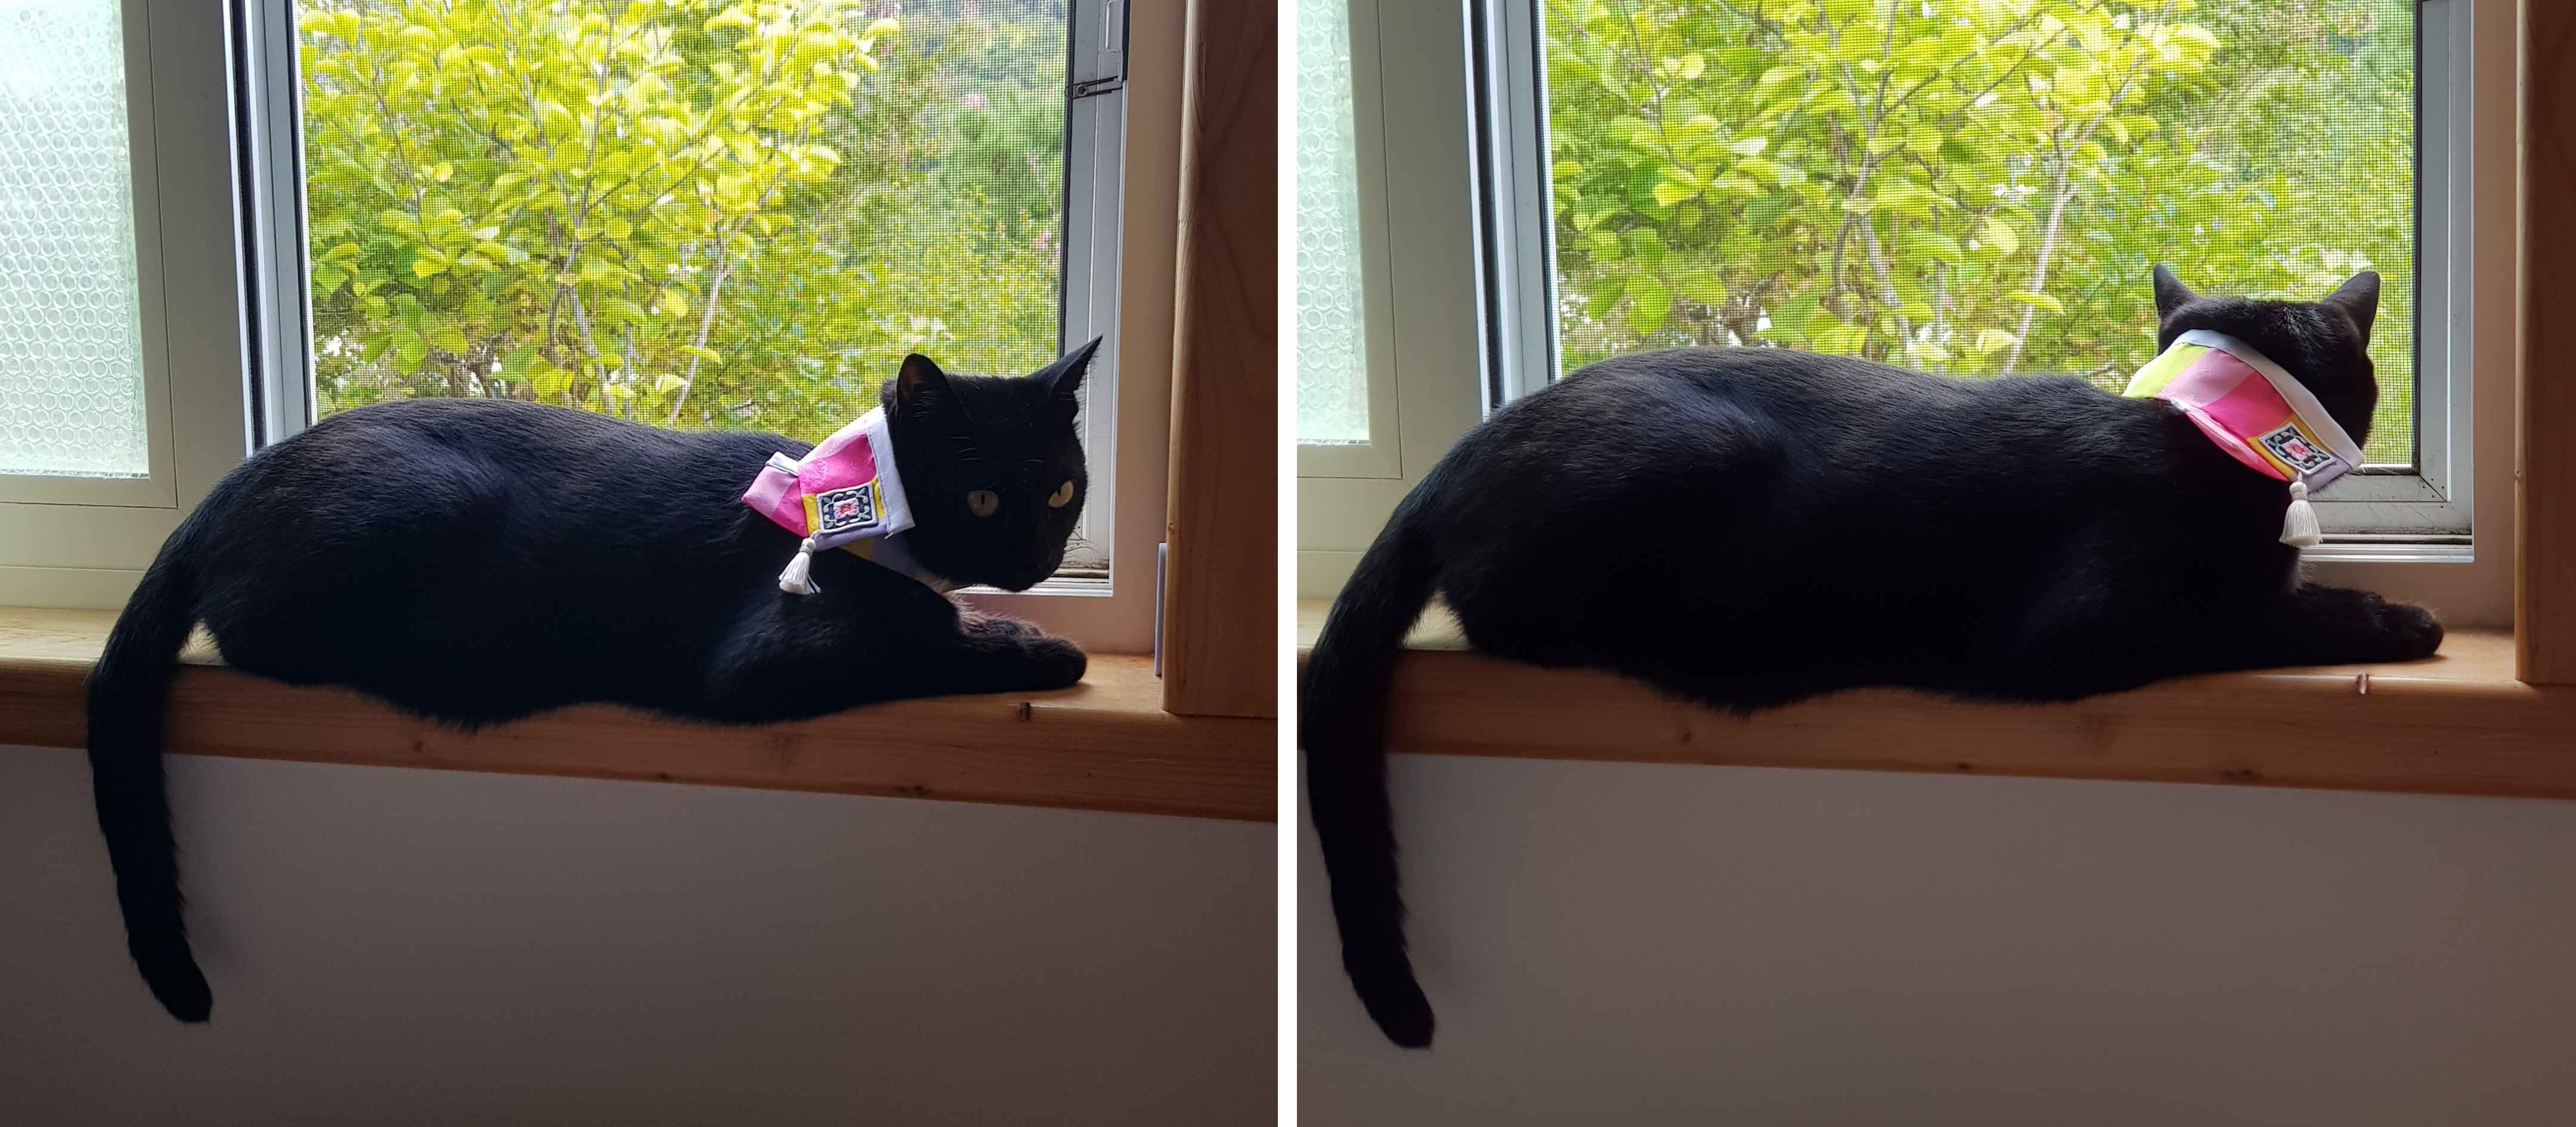 창가에 앉아있는 검은 고양이